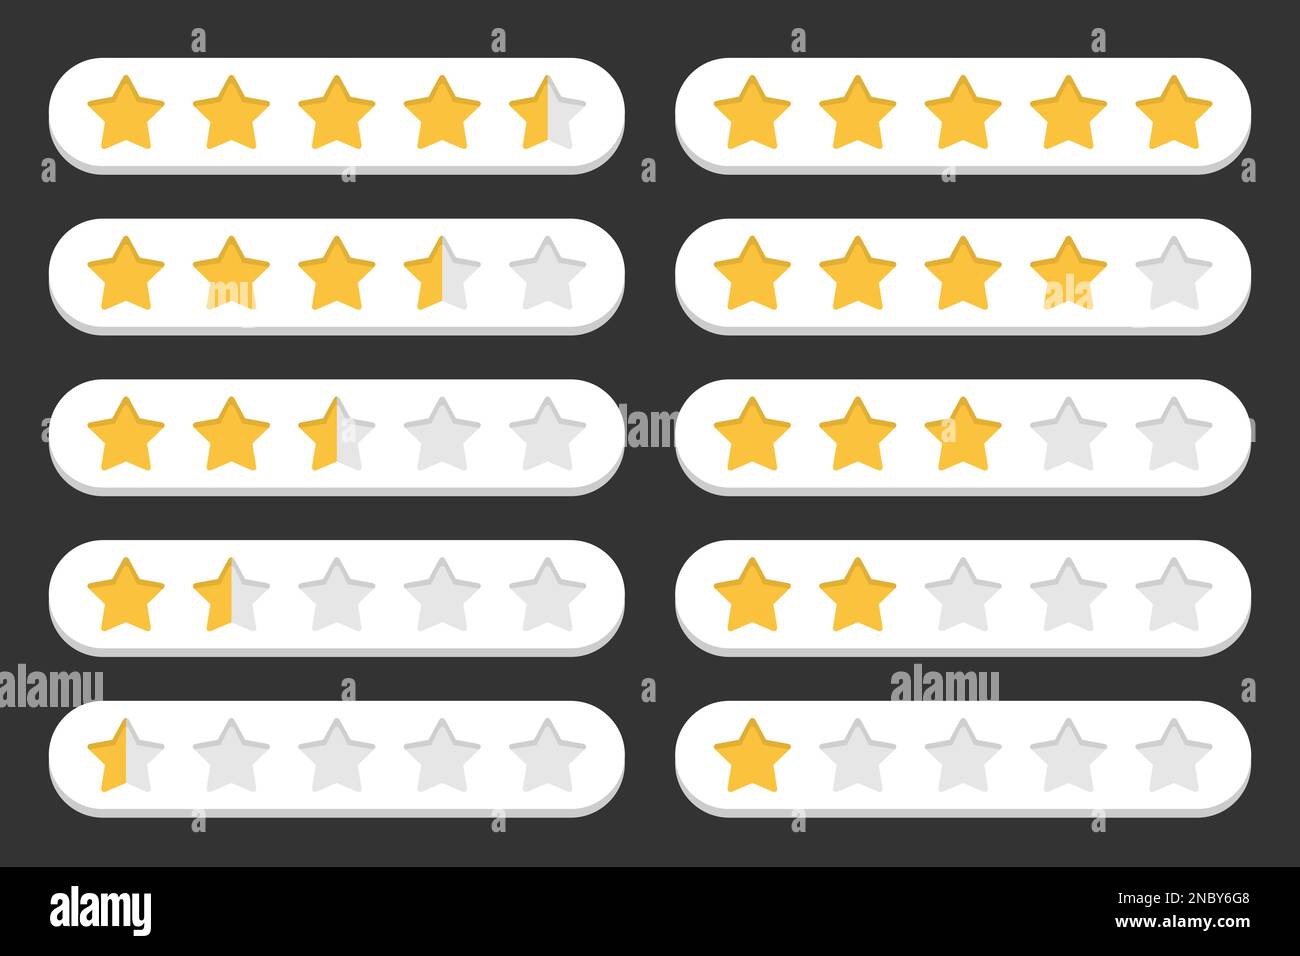 Ensemble d'étoiles évaluation client dans une conception plate Illustration de Vecteur